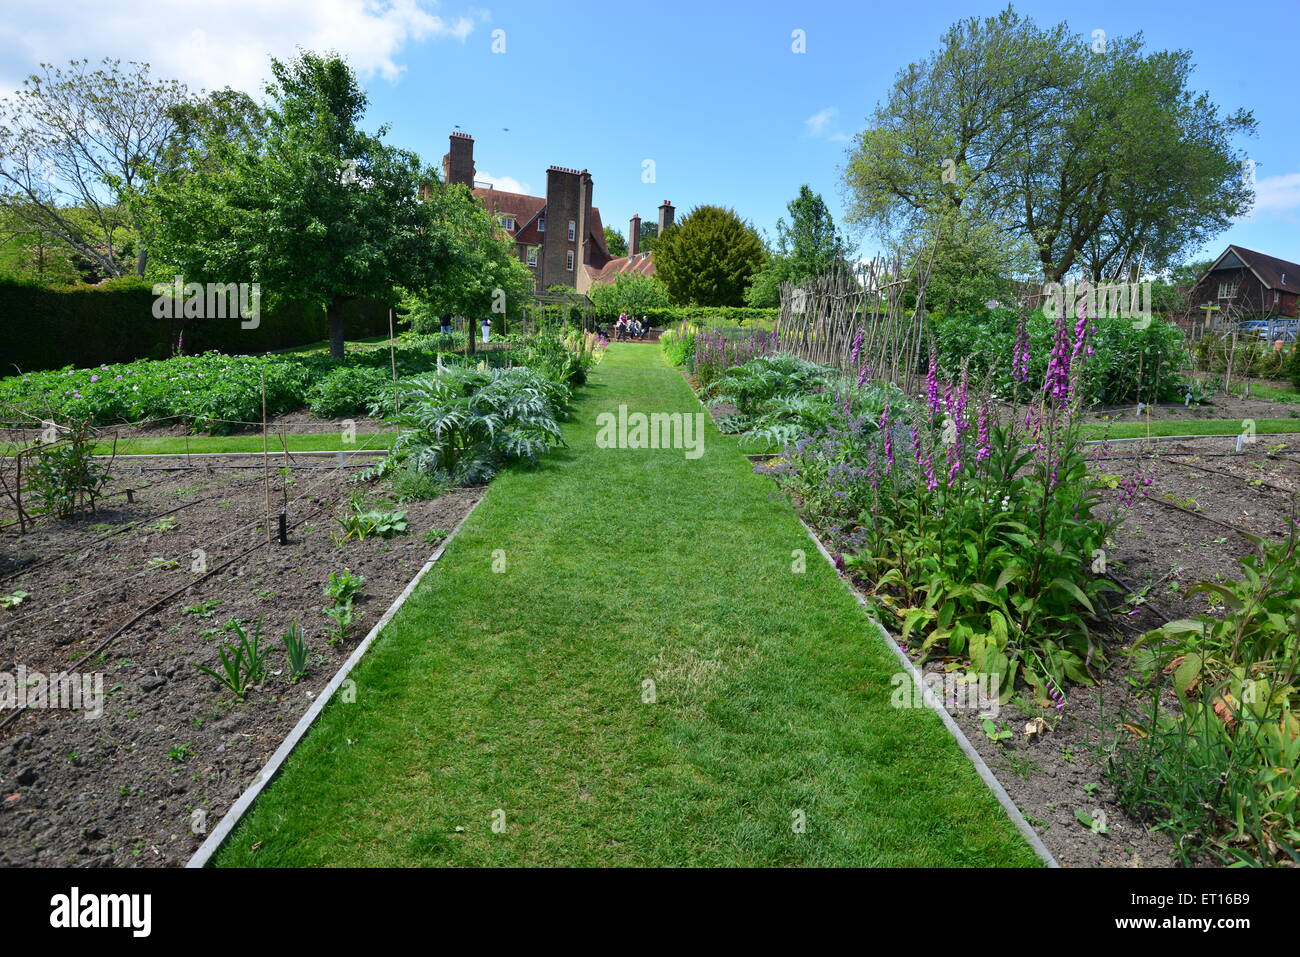 An English country garden Stock Photo